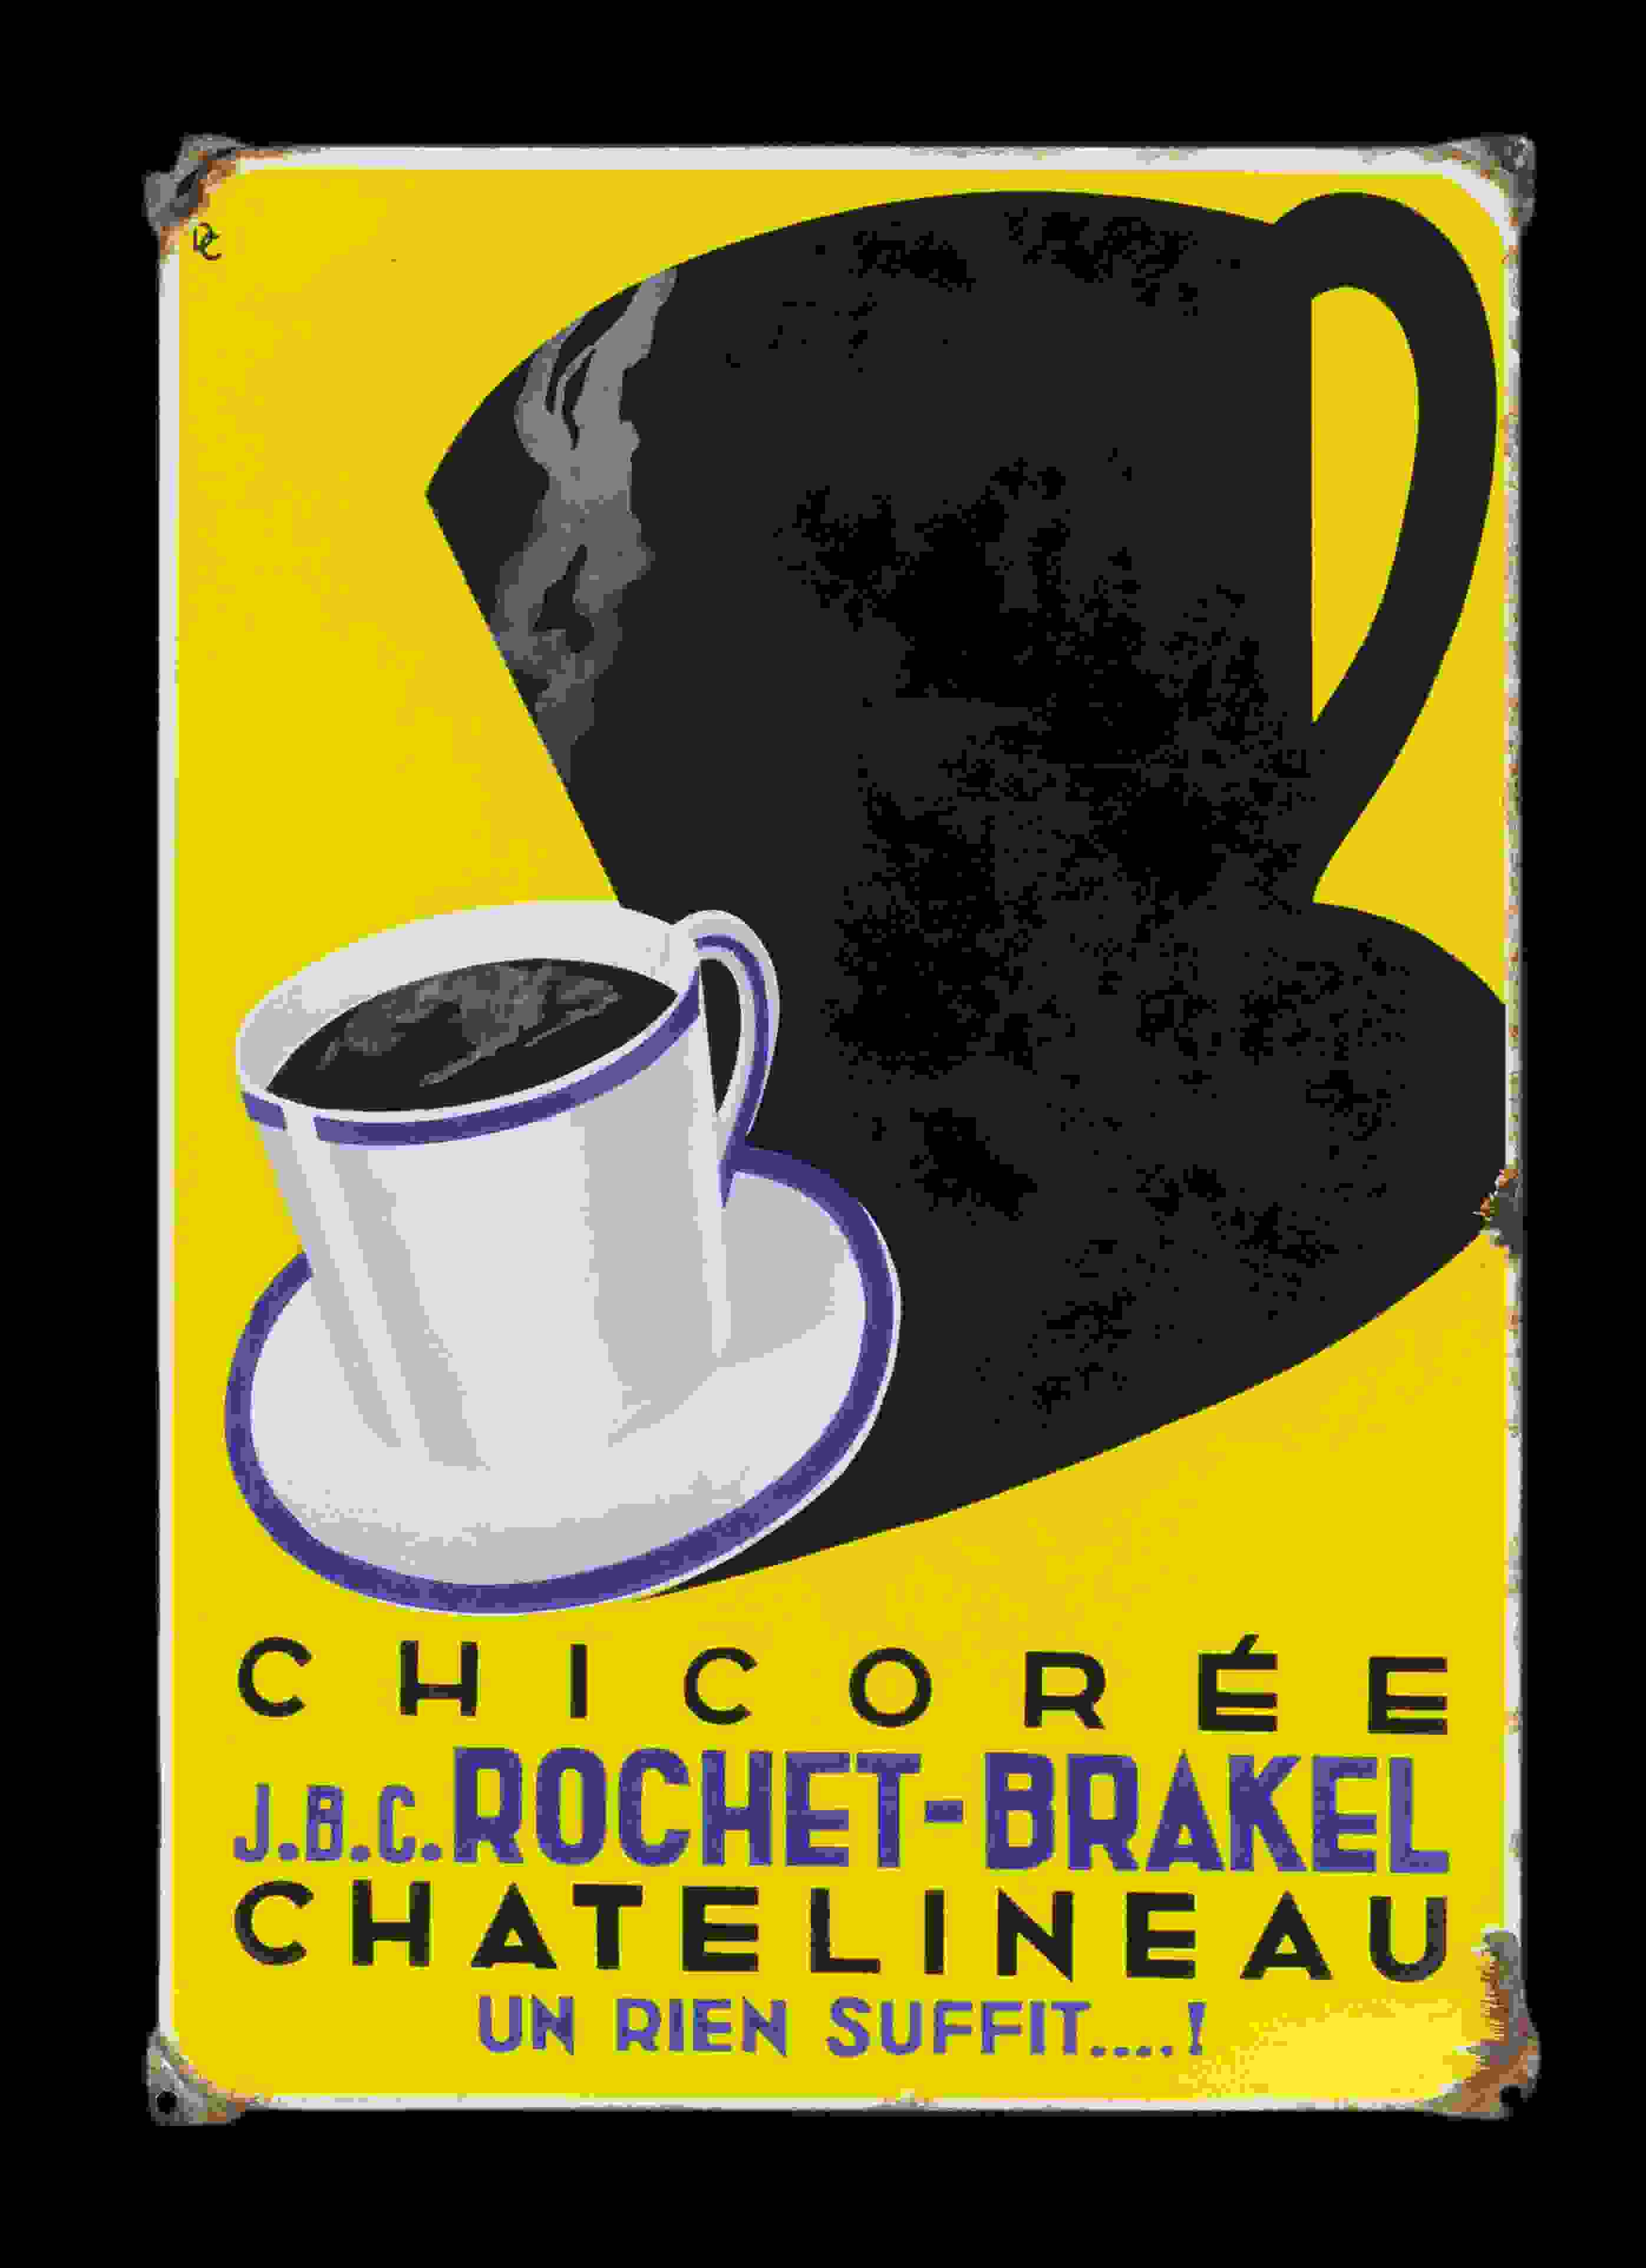 Chicorée Rochet-Brakel 